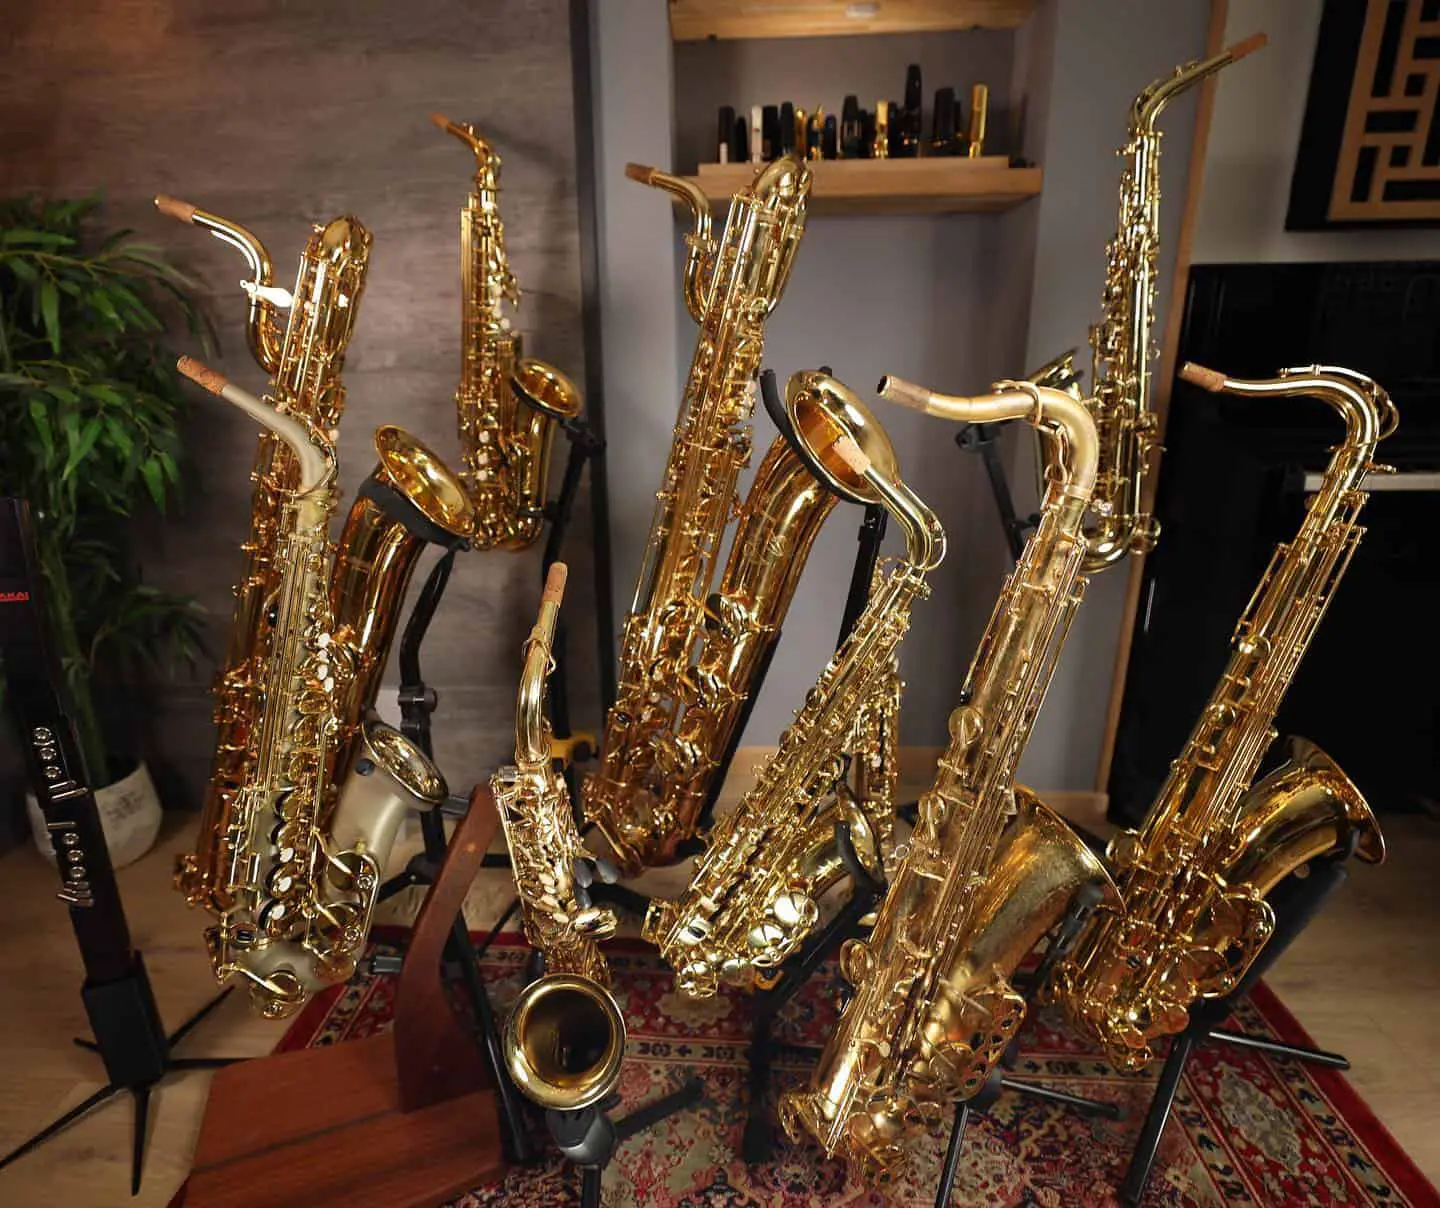 Several Saxophones Standing Together